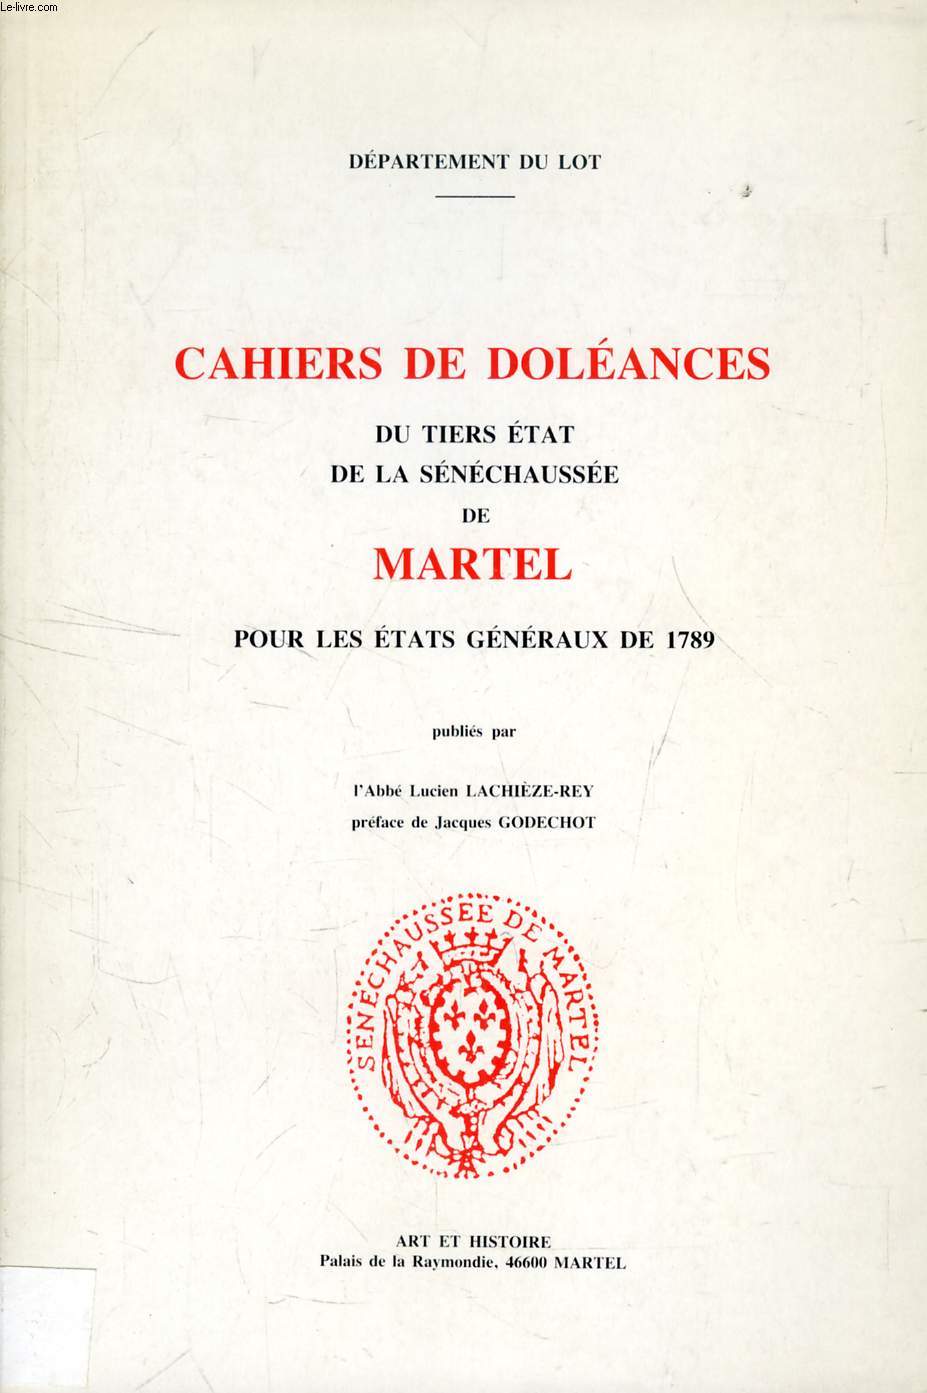 CAHIERS DE DOLEANCES DU TIERS ETAT DE LA SENECHAUSSEE DE MARTEL POUR LES ETATS GENERAUX DE 1789 (DEPARTEMENT DU LOT)